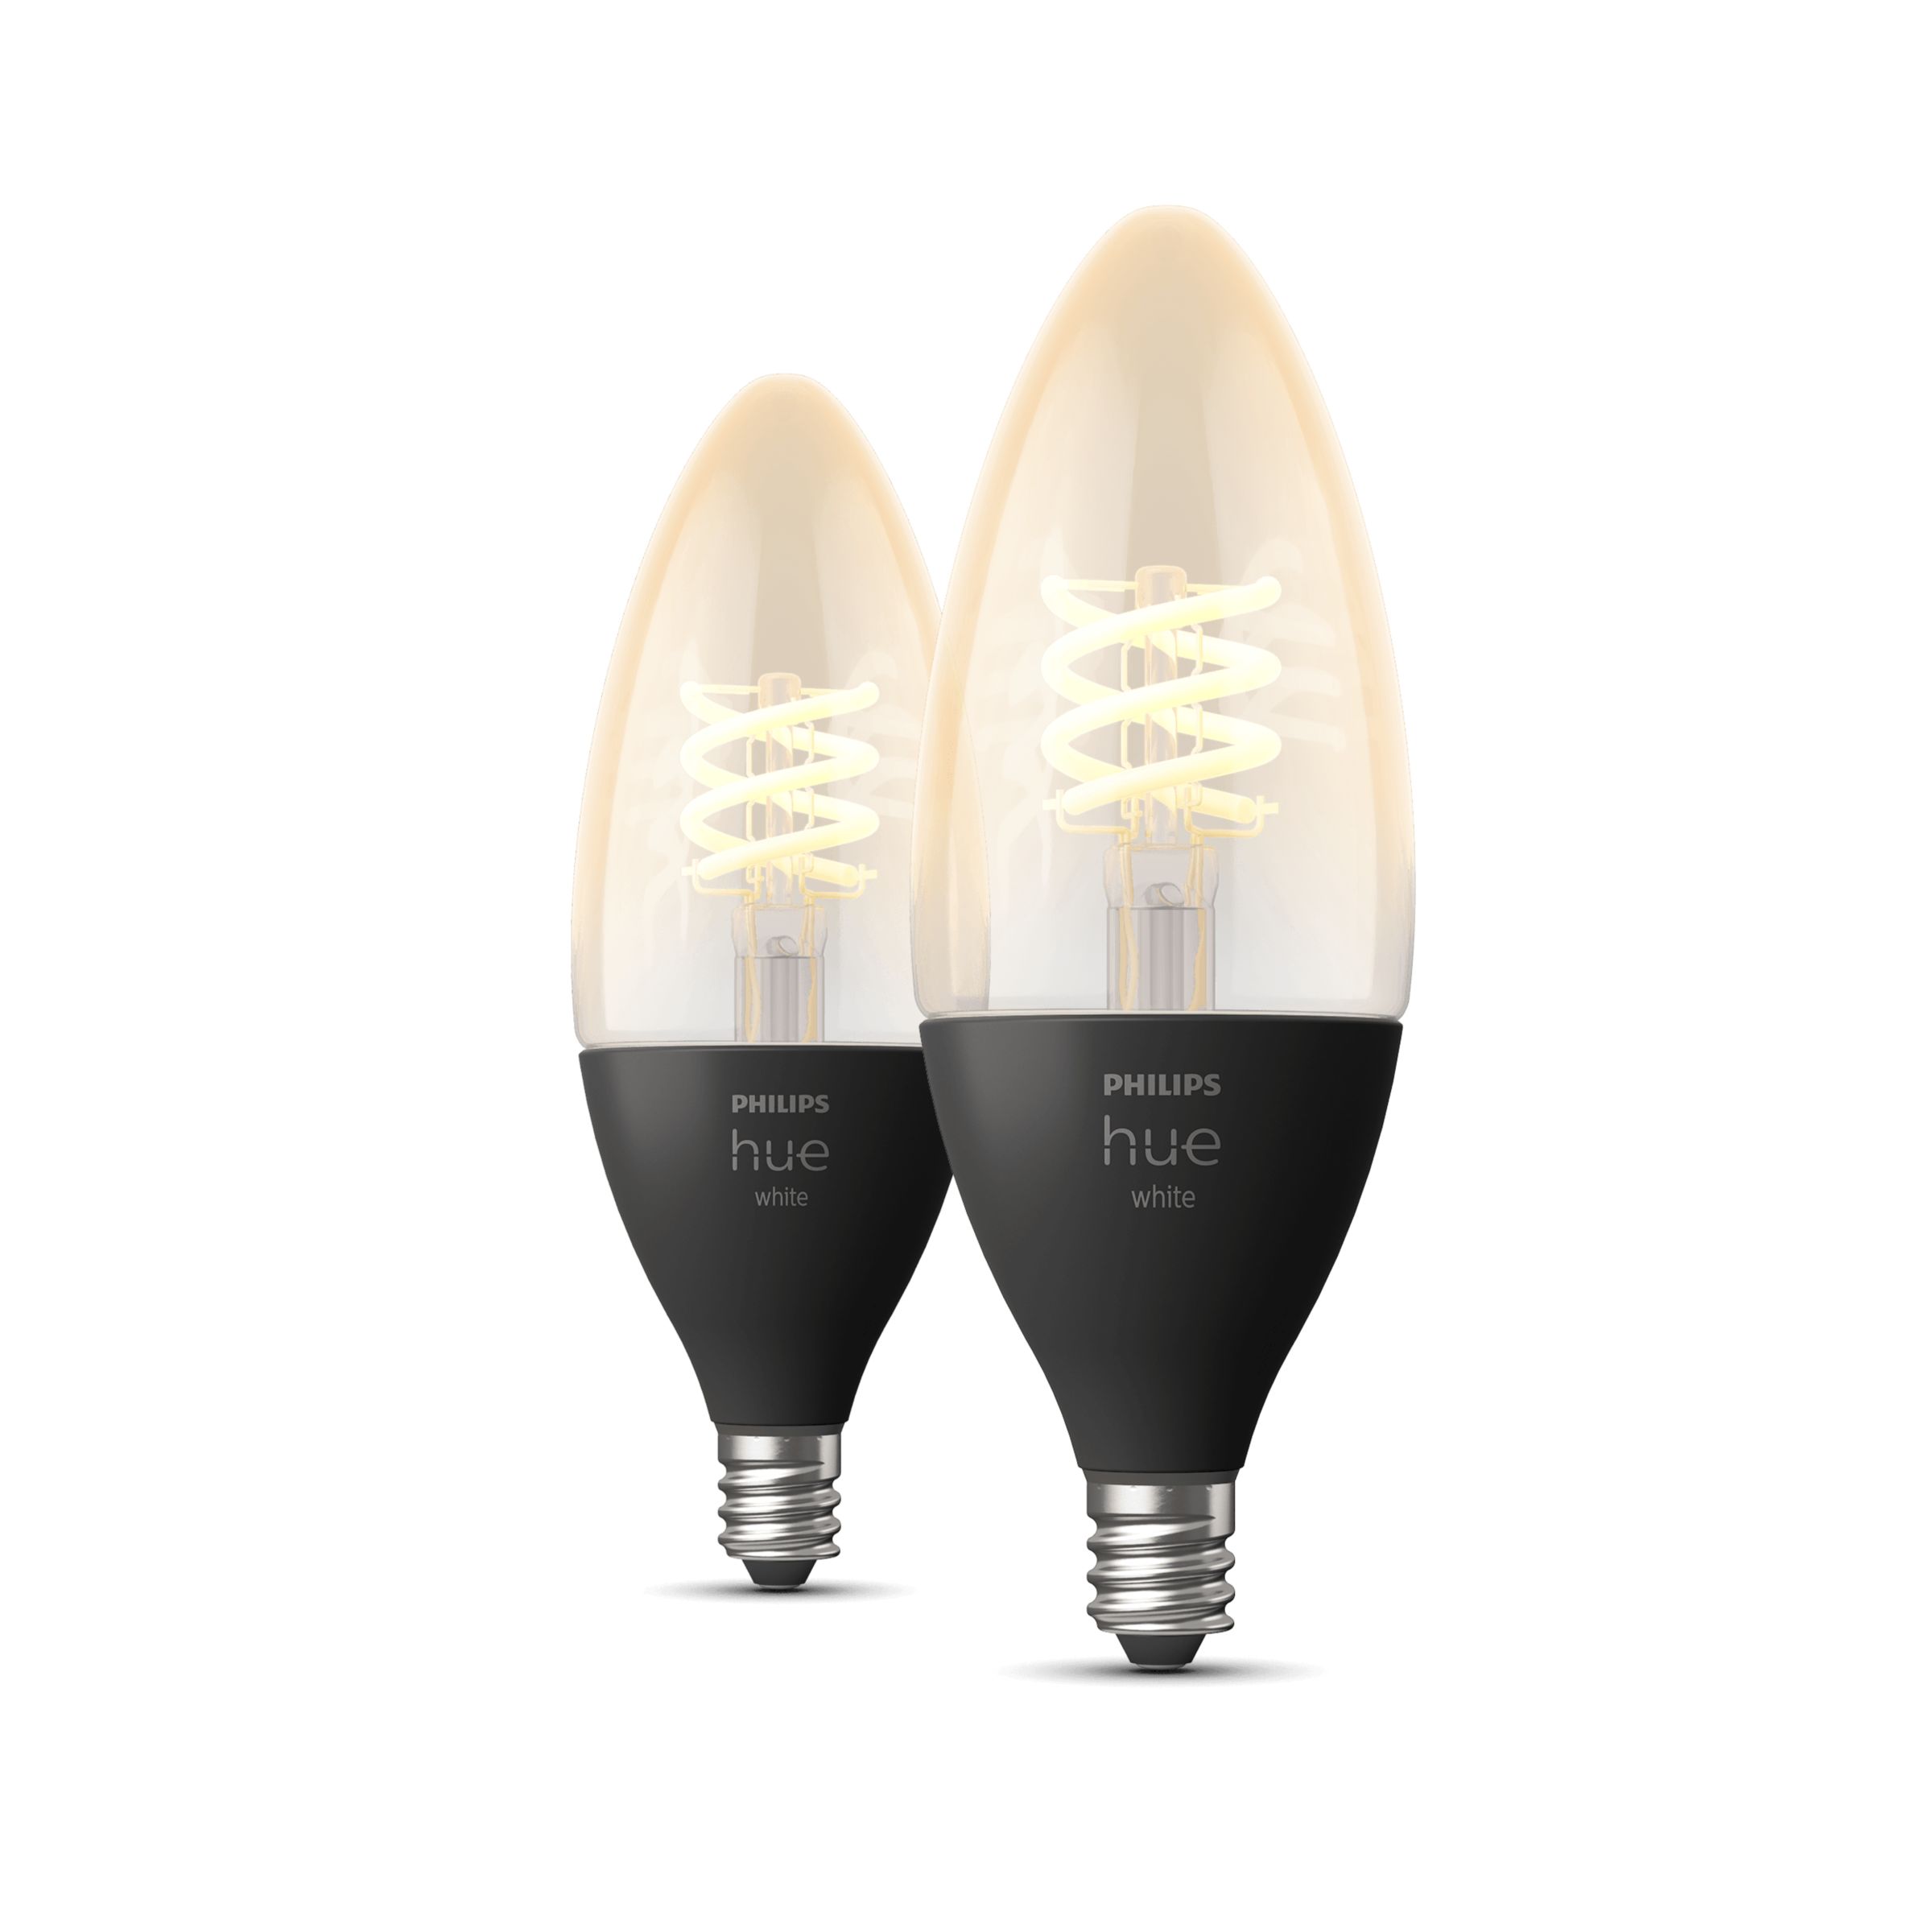 1W LED Filament C7 Veilleuse Ampoule Sel Lampe Ampoule Incandescente 75LM  E12 Candélabre Base LED Veilleuse Blanc Chaud Du 2,81 €